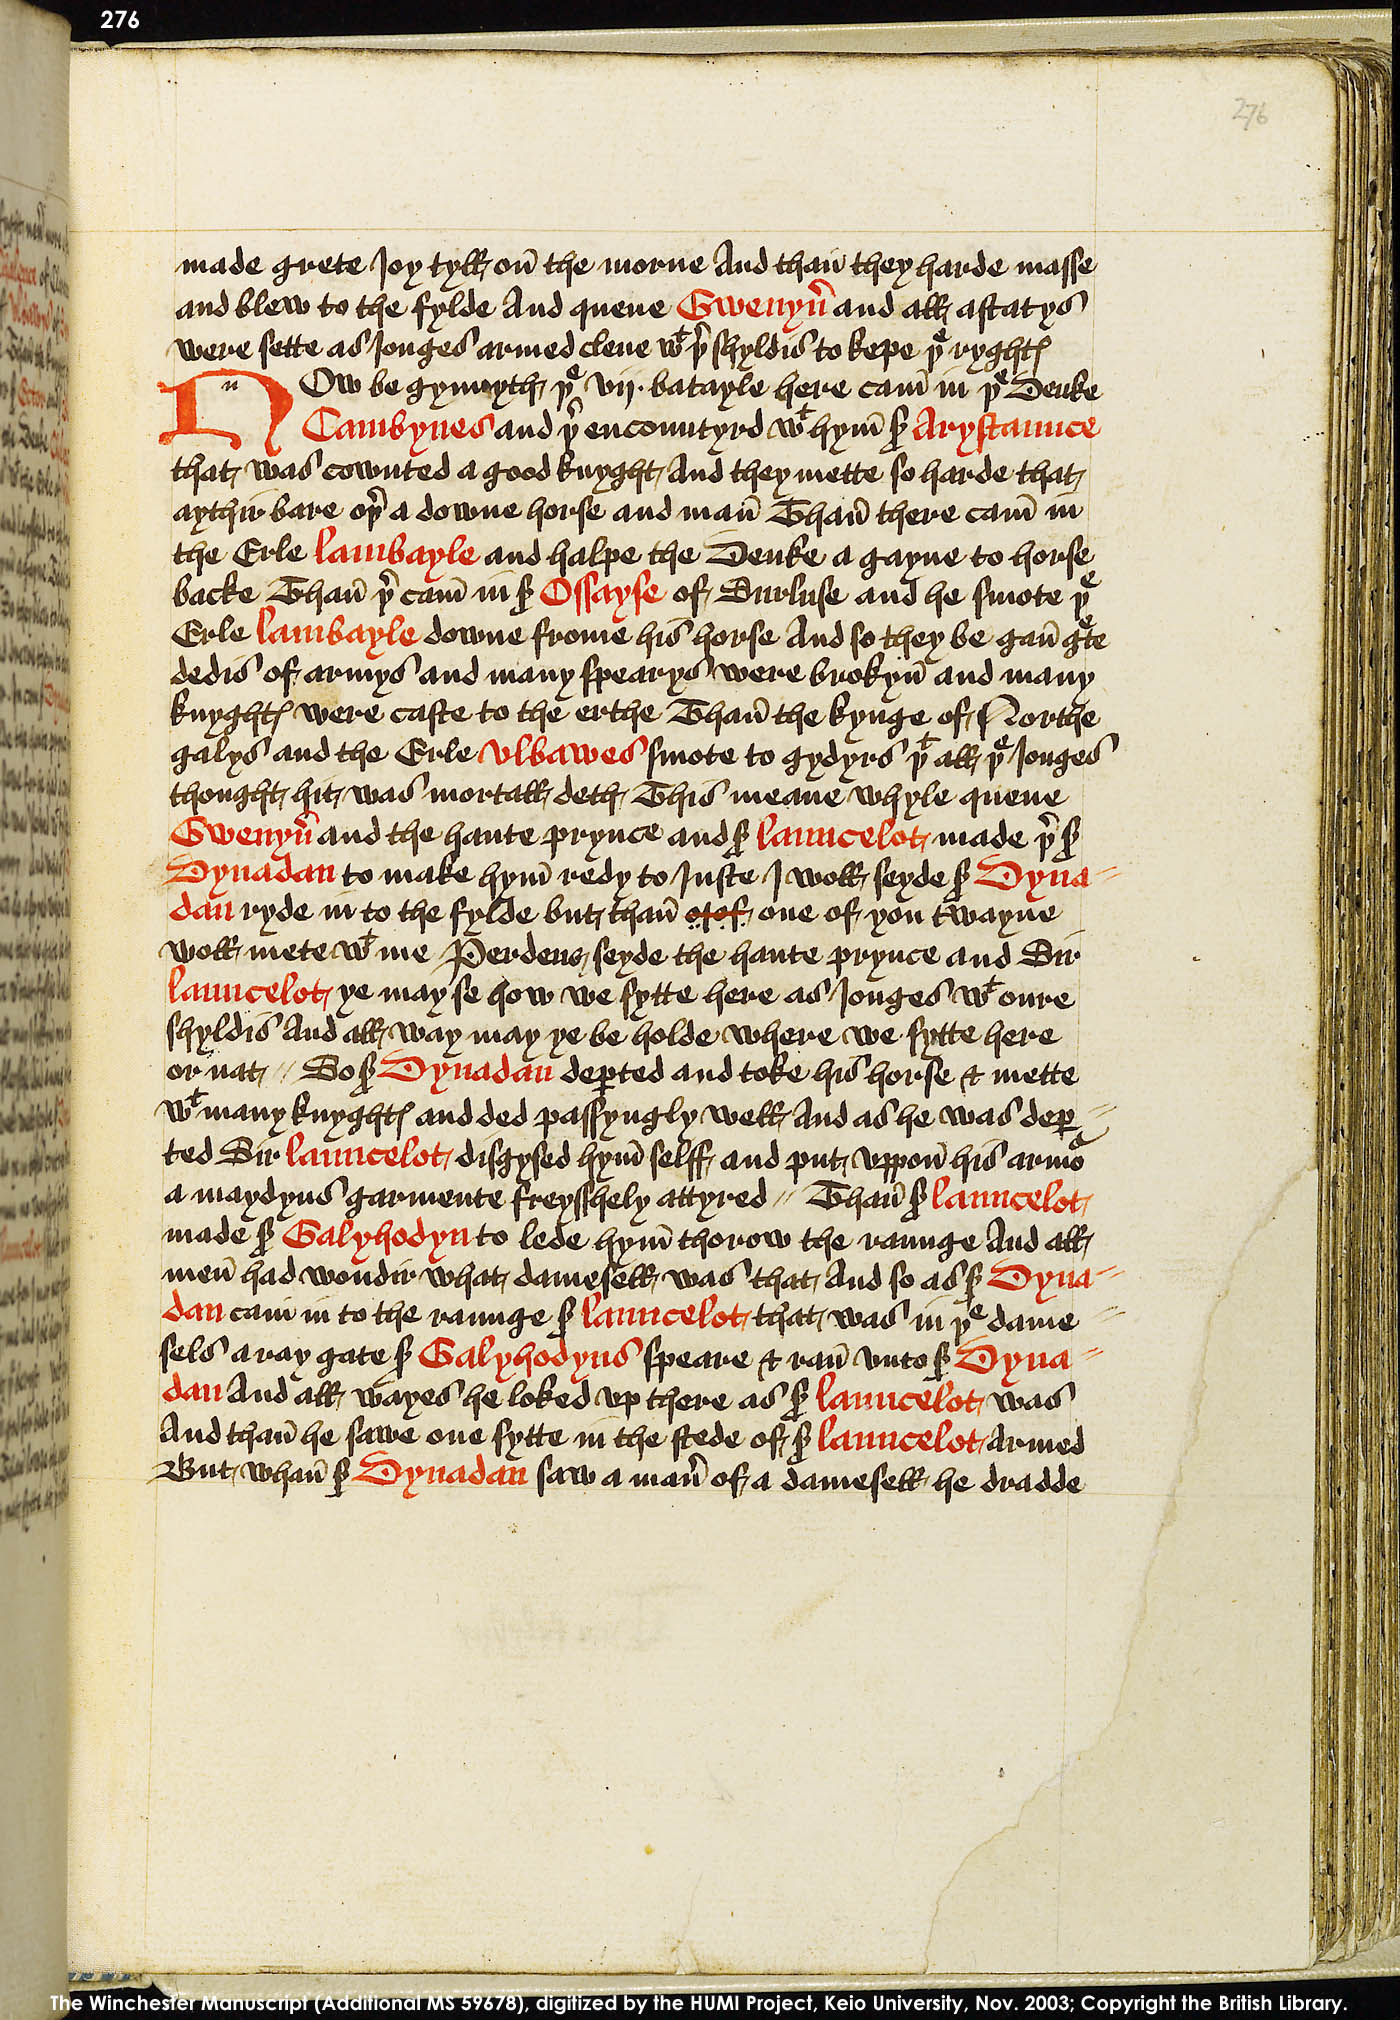 Folio 276r